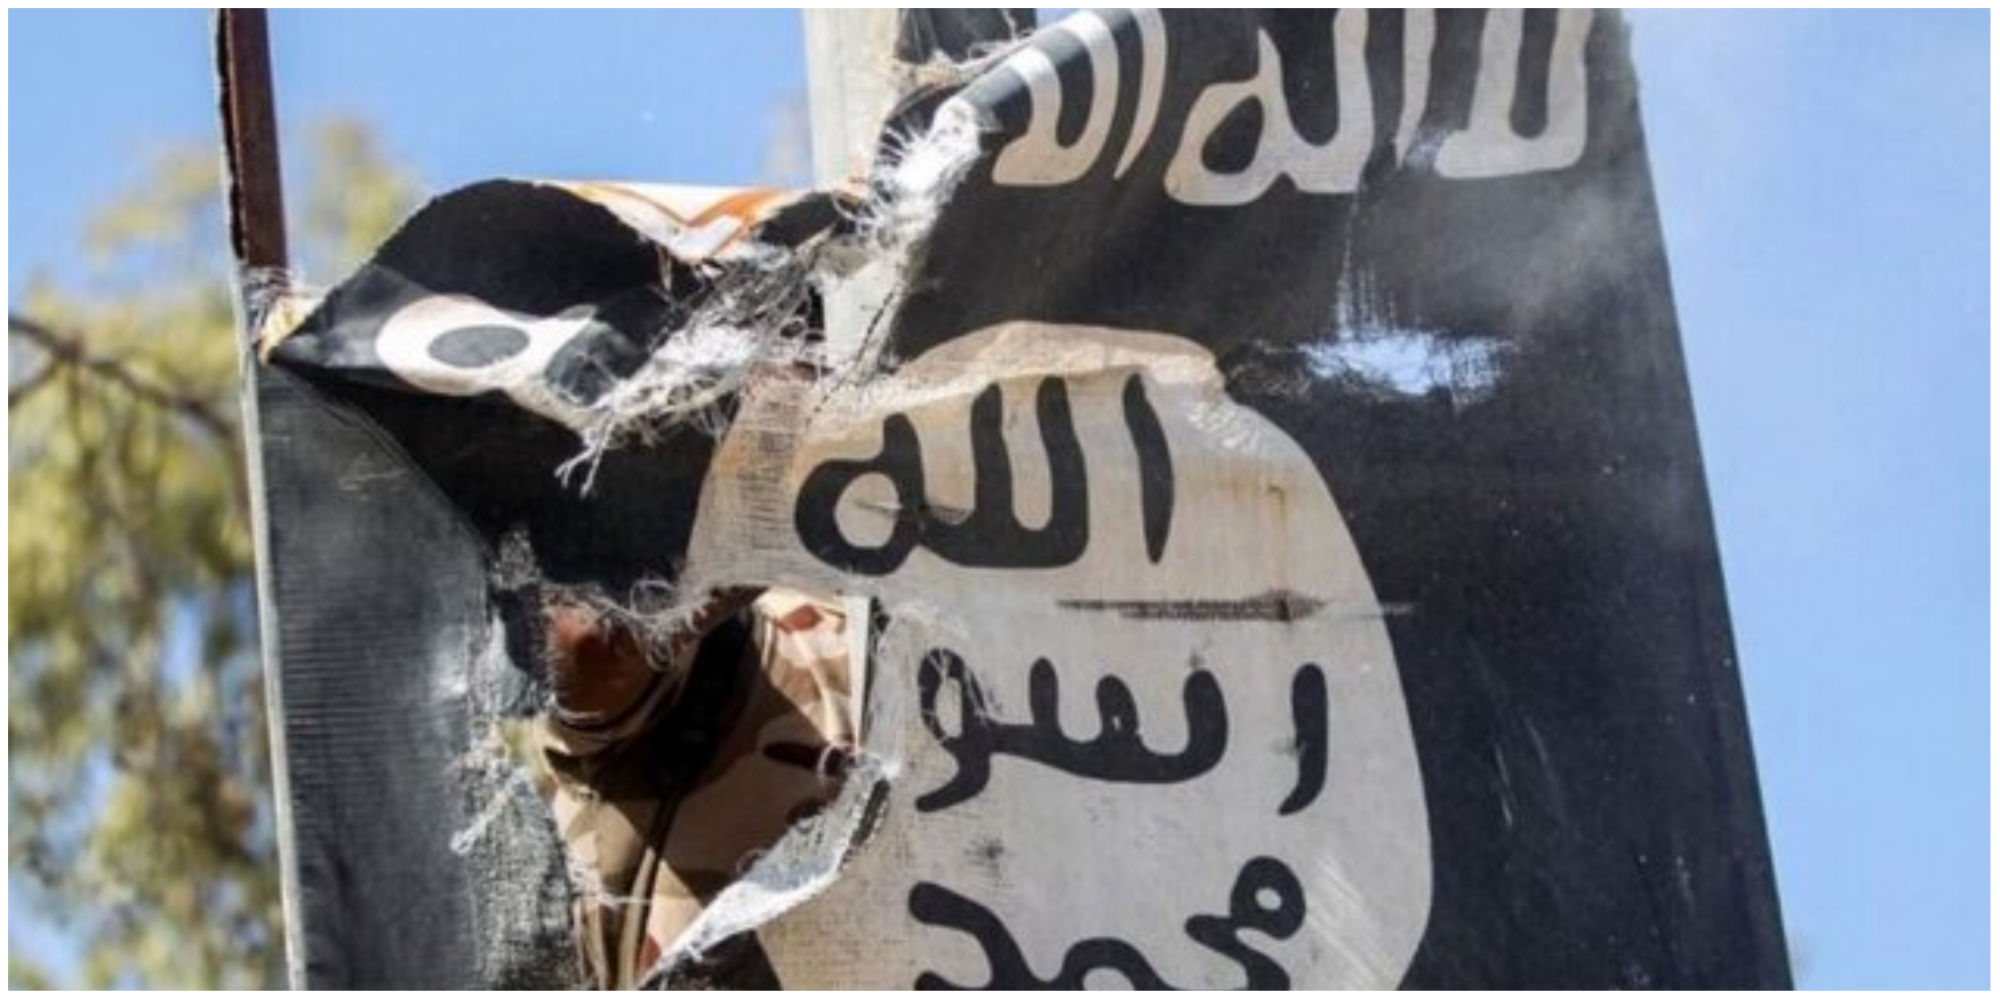  ۹ تروریست داعشی کشته شدند 